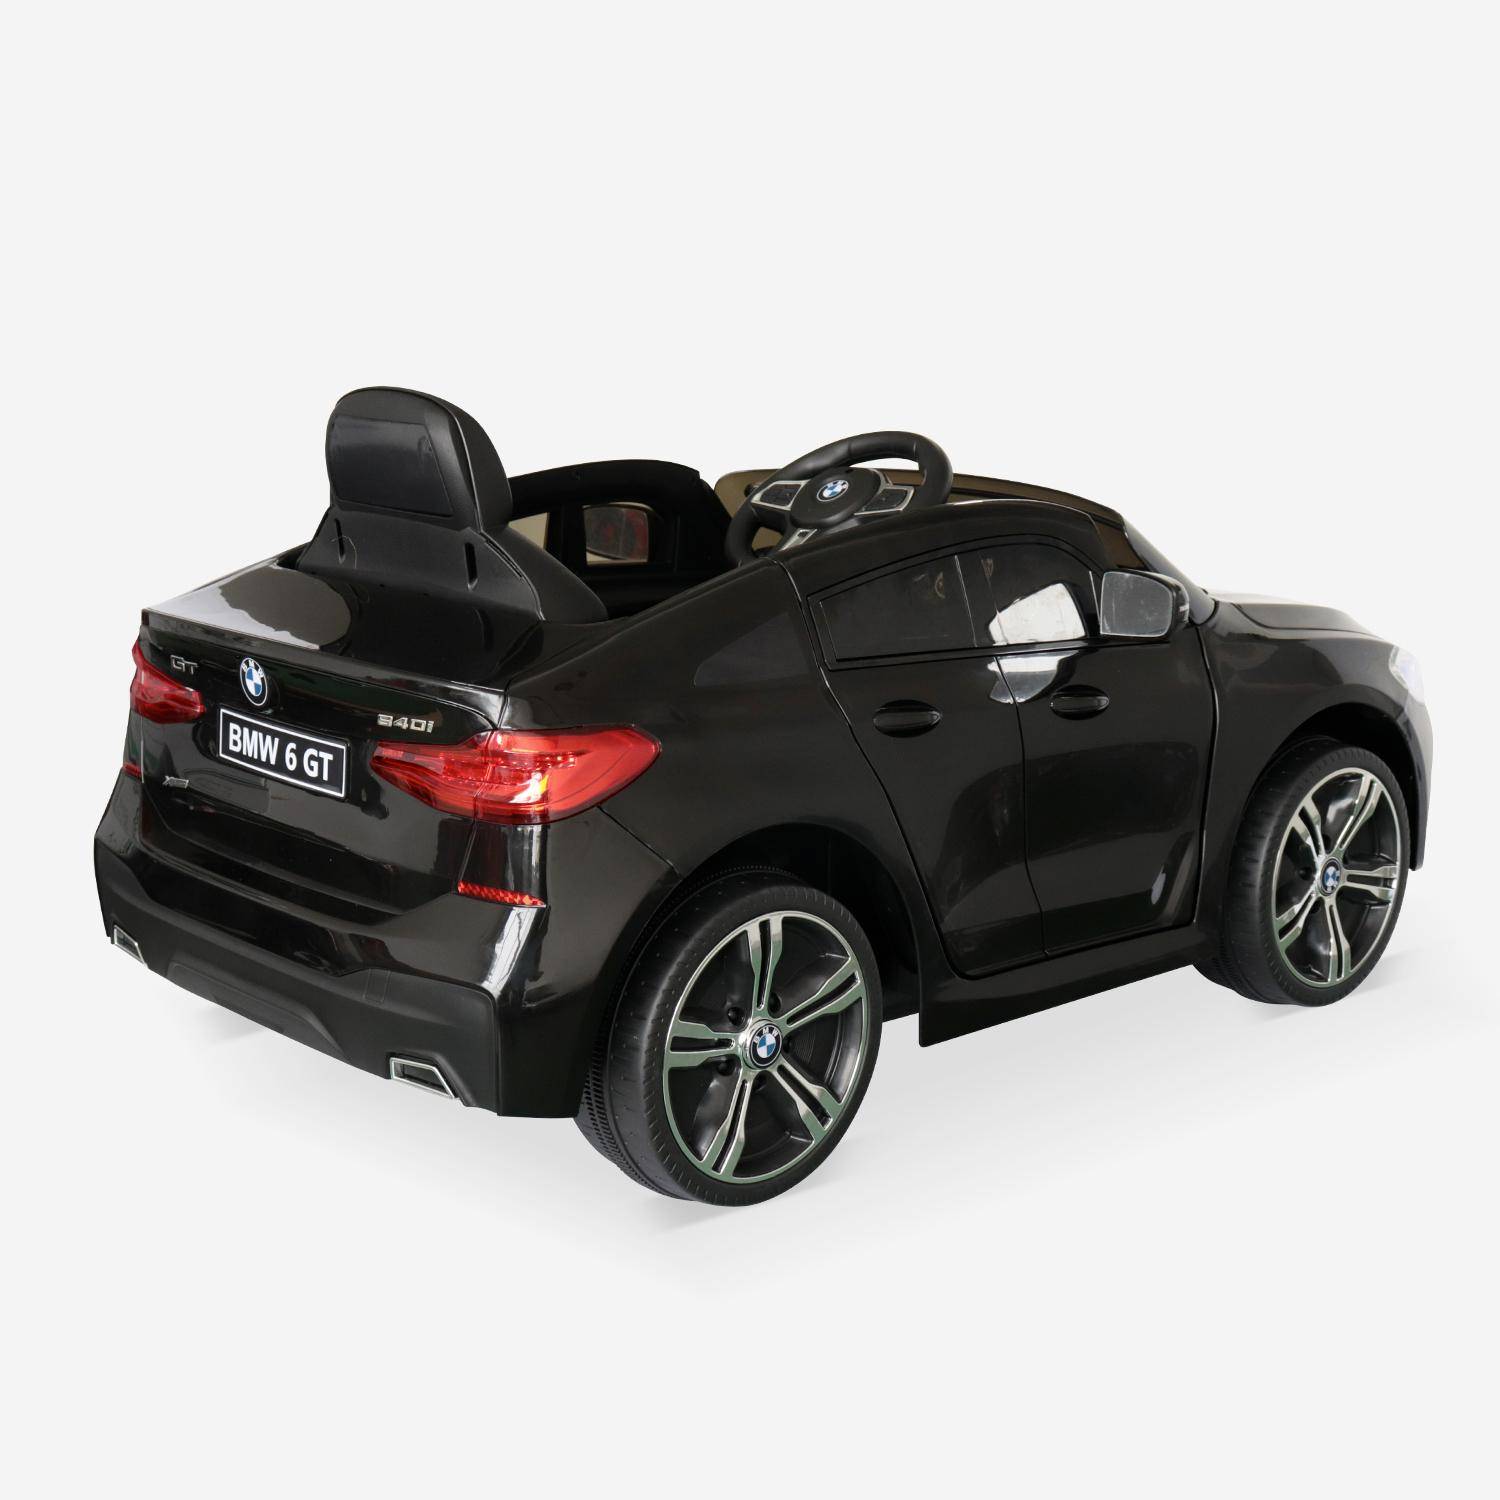 BMW GT6 Gran Turismo negro, coche eléctrico 12V, 1 plaza, descapotable para niños con autorradio y mando a distancia Photo3